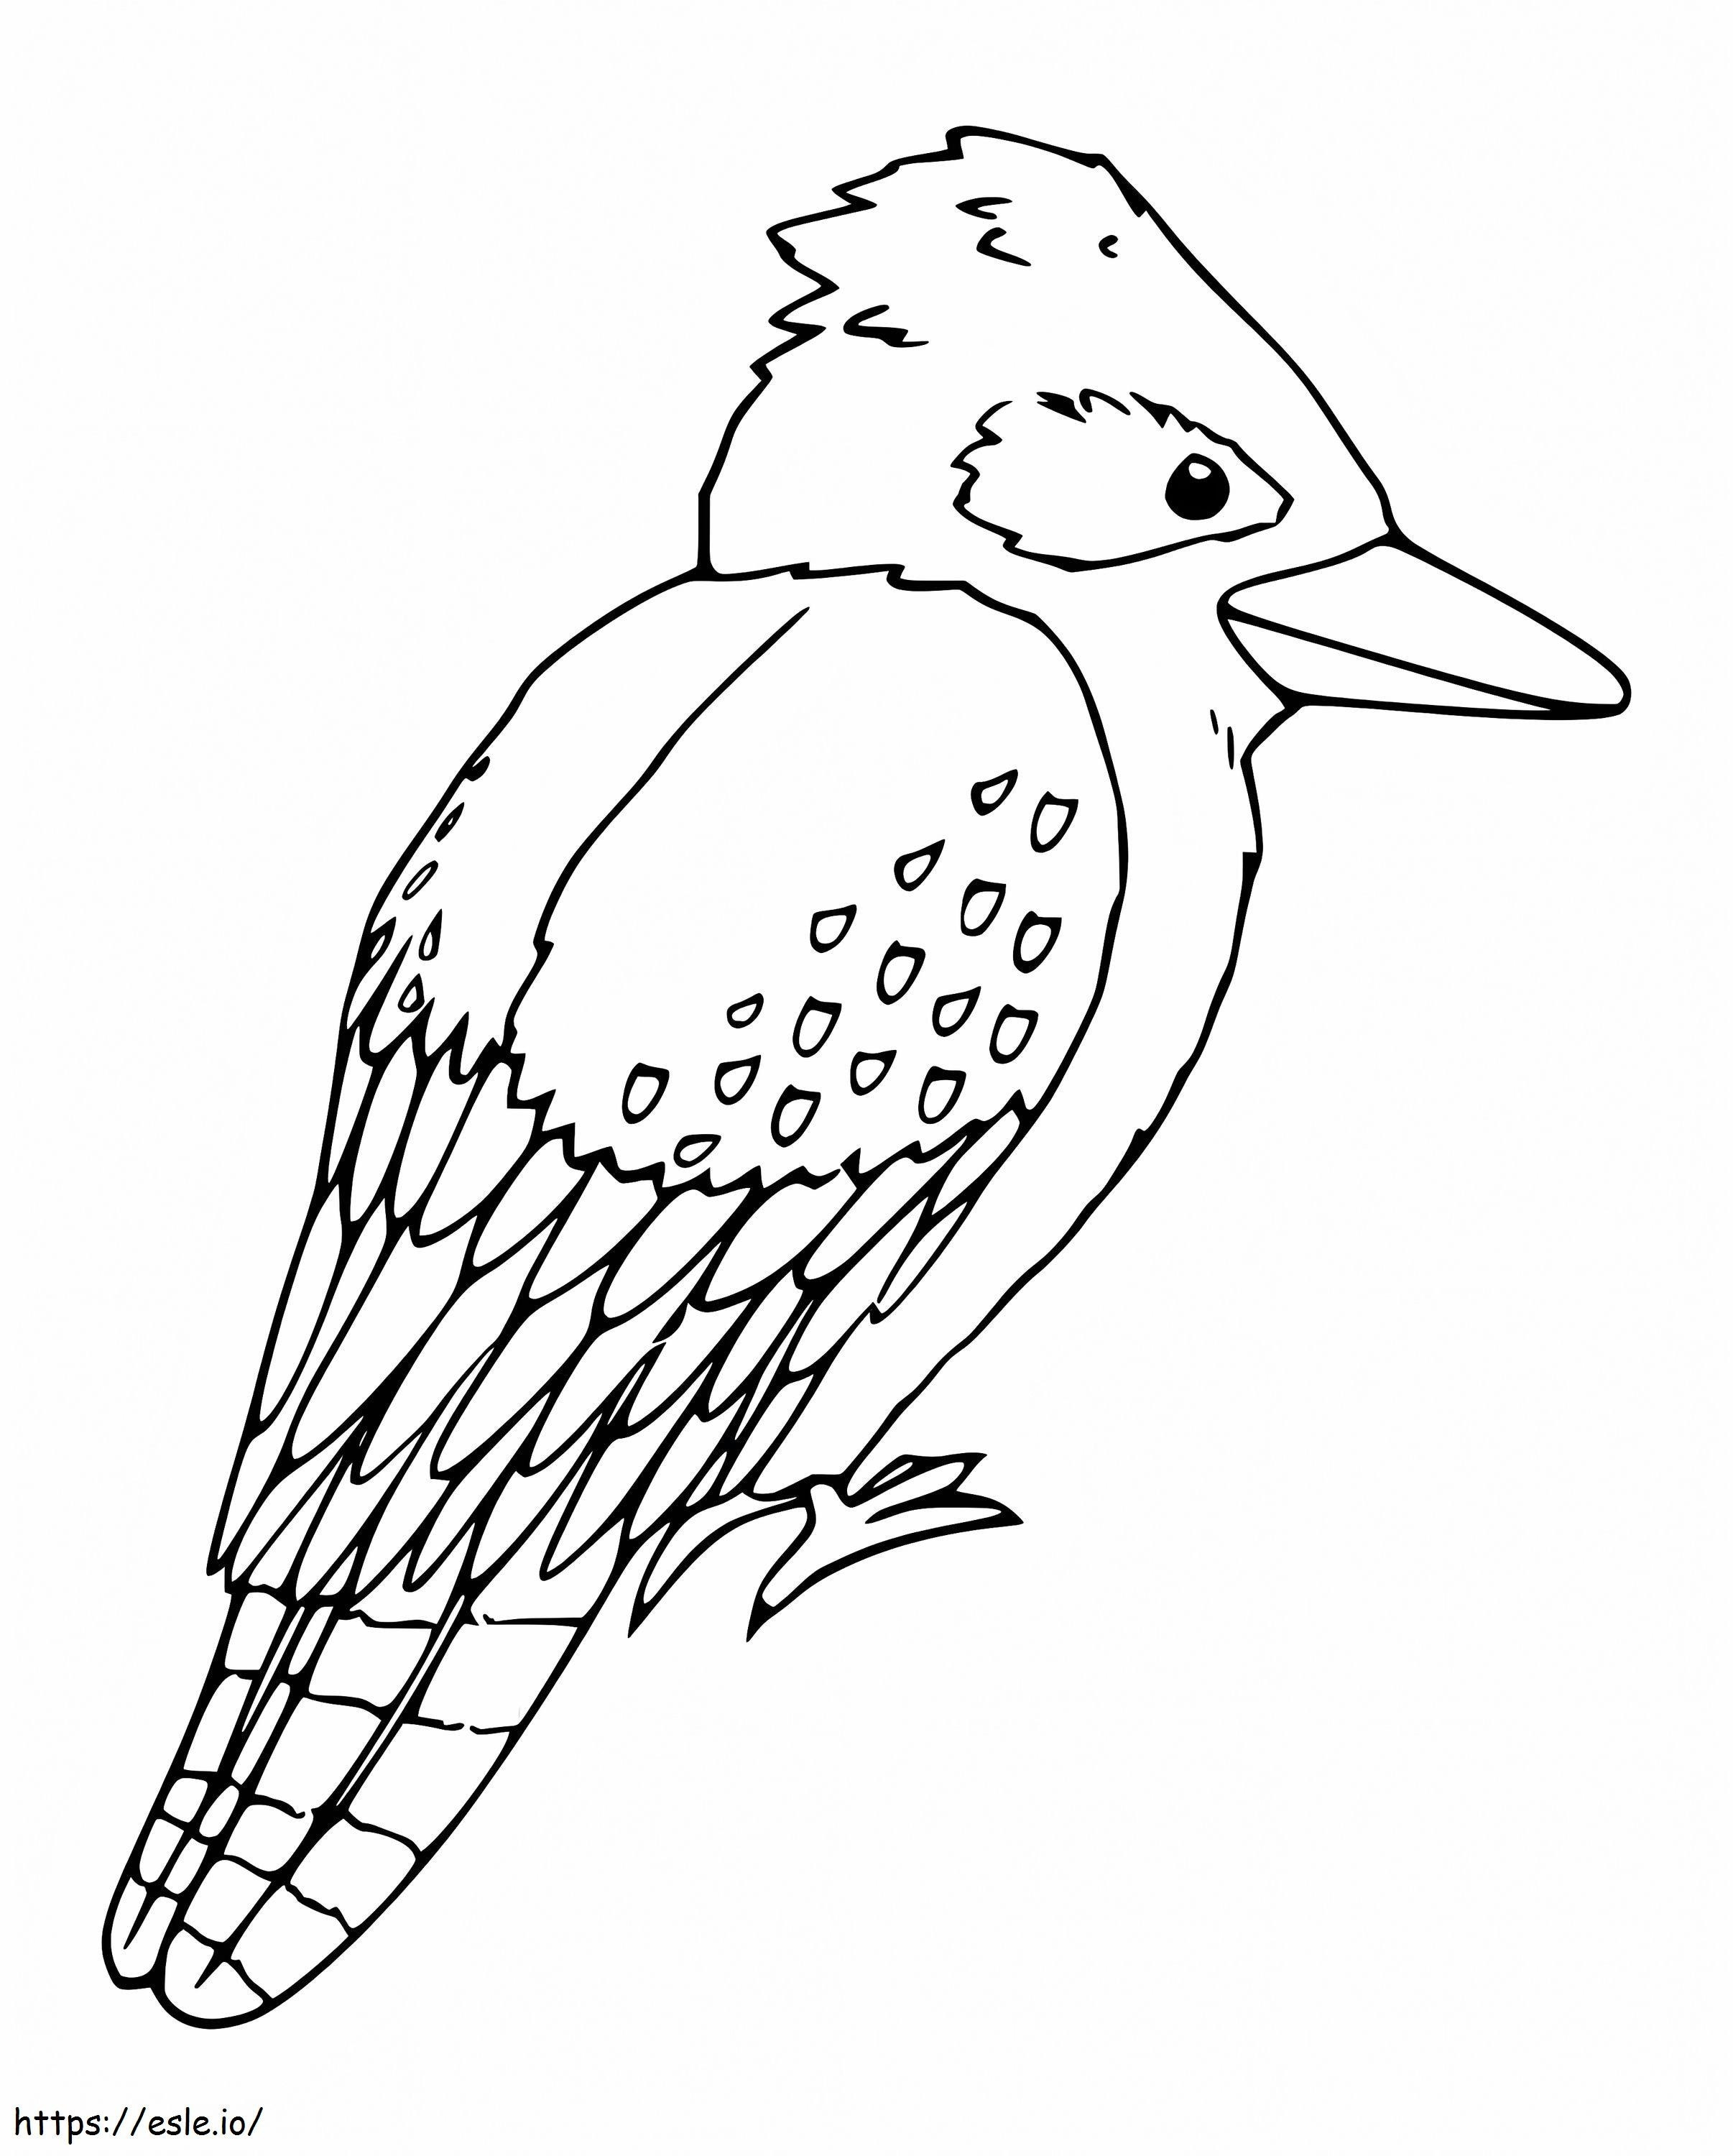 Coloriage Adorable Kookaburra à imprimer dessin